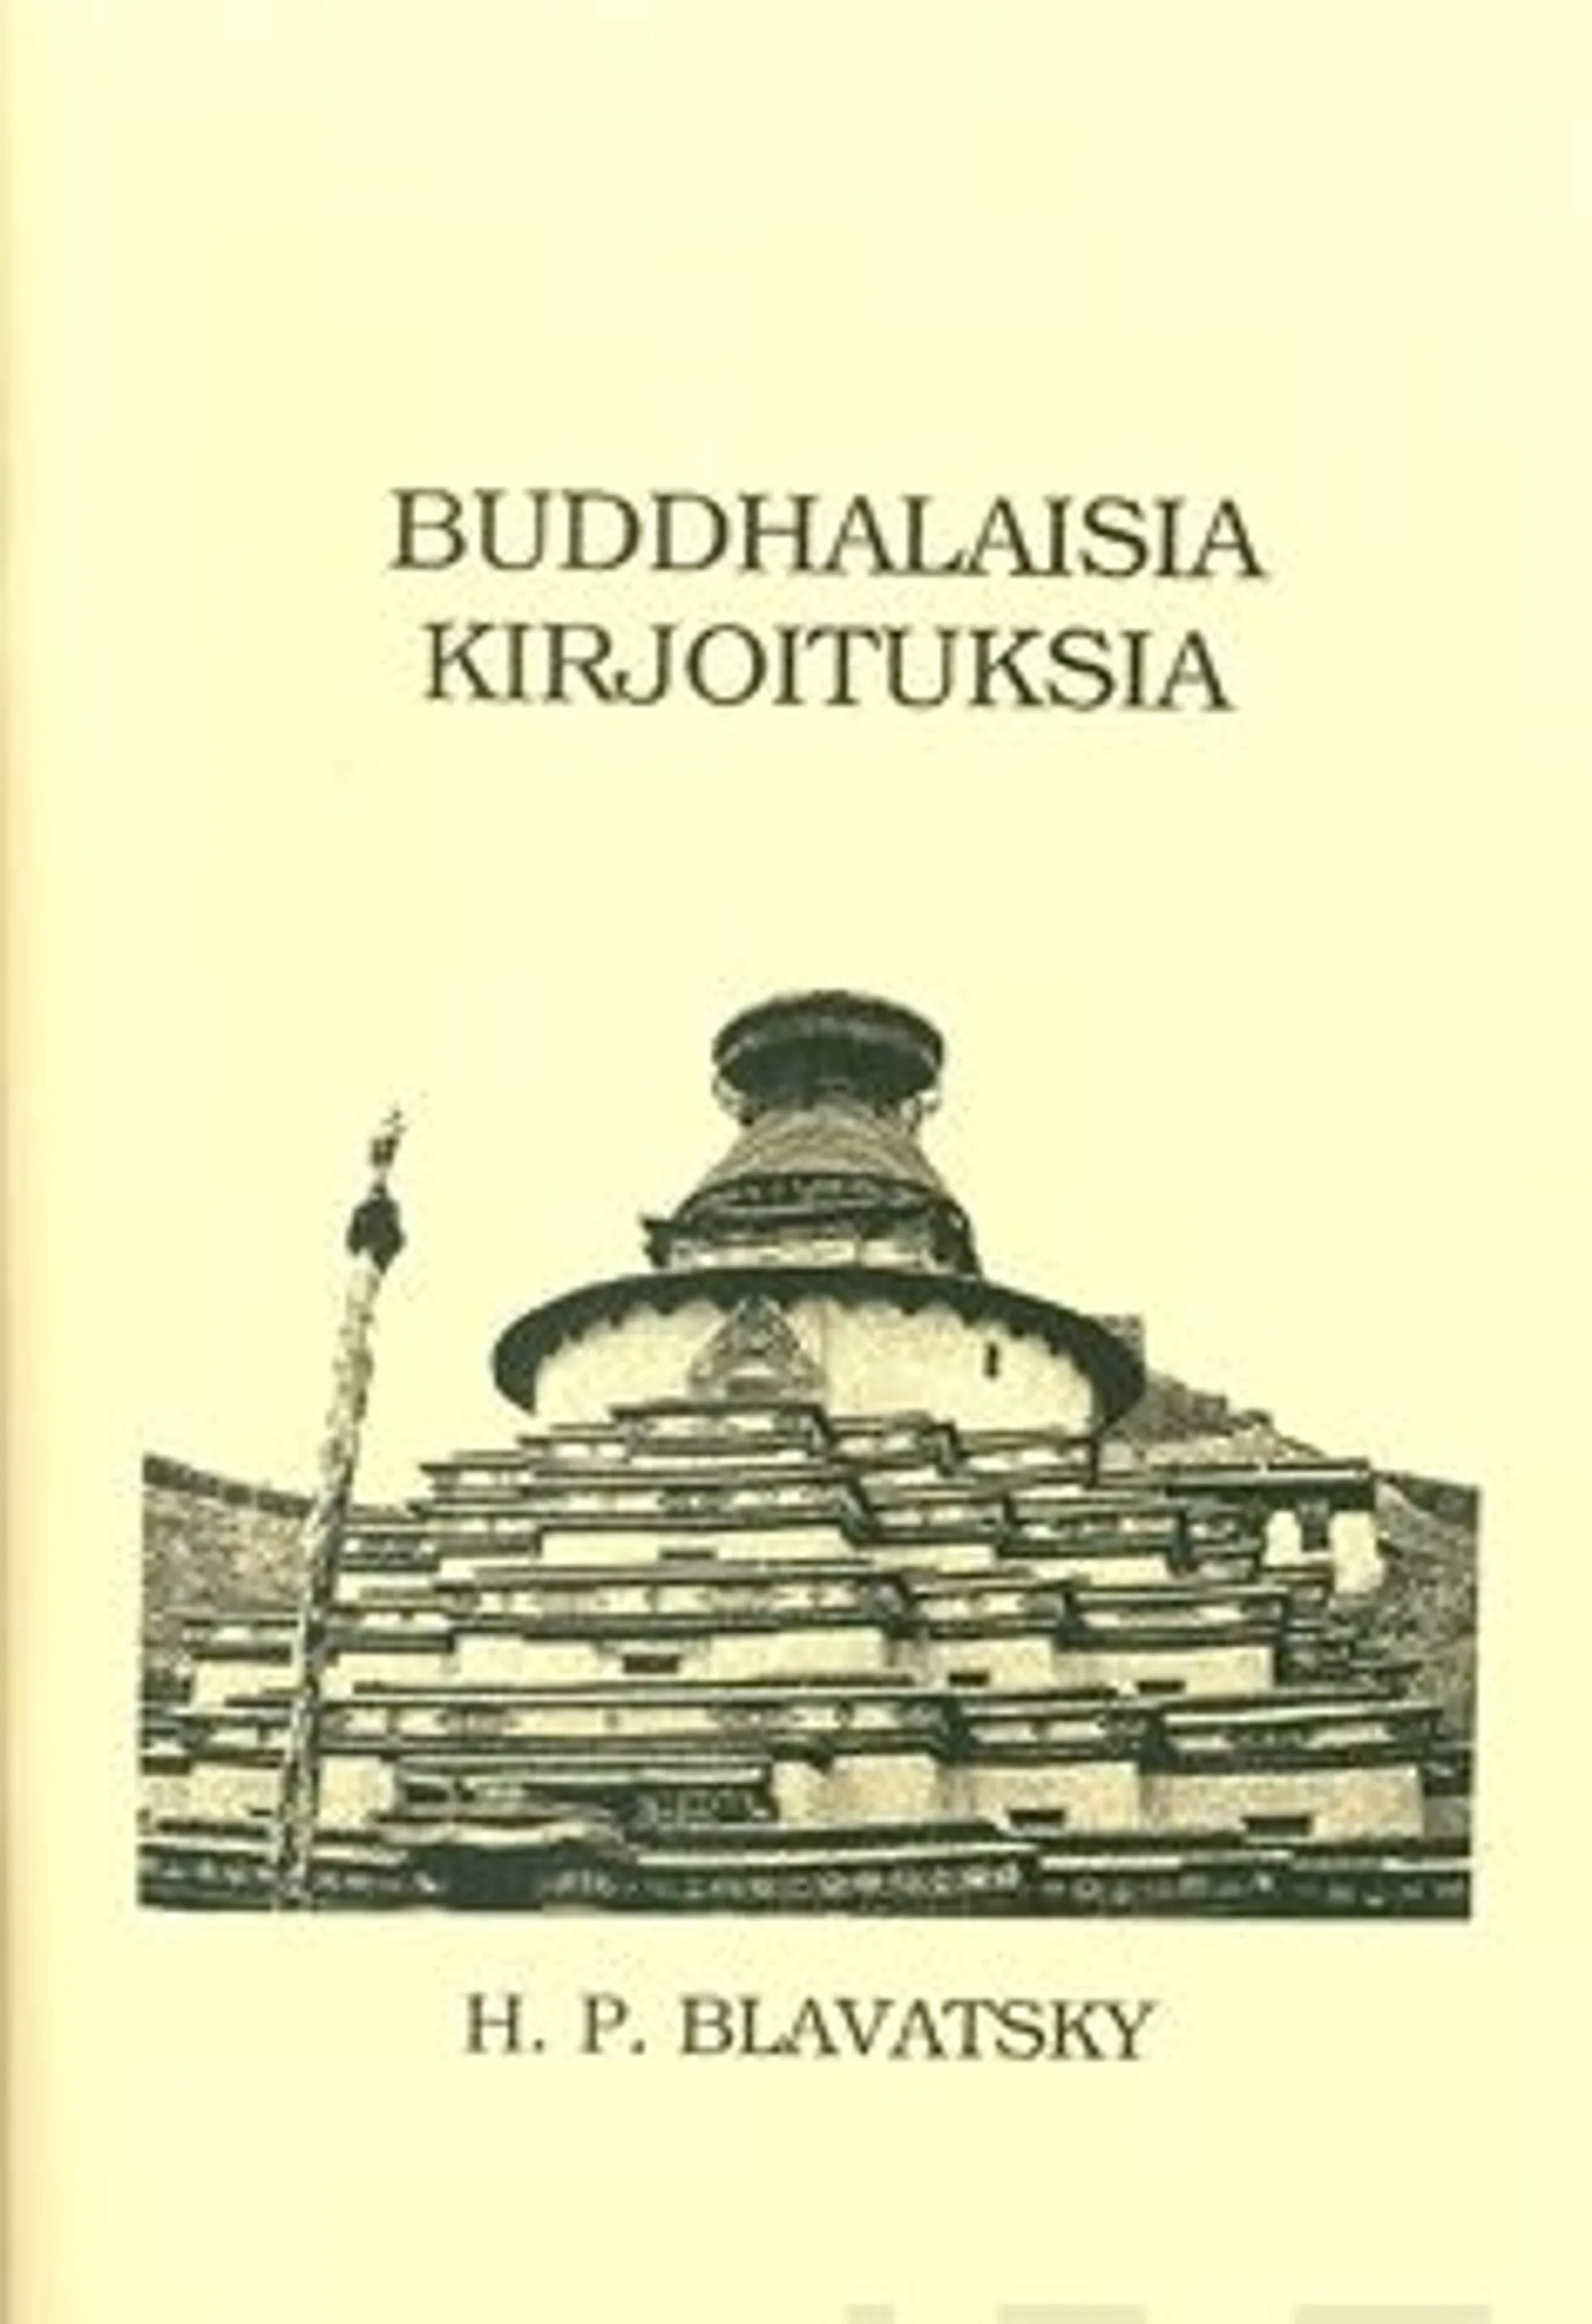 Blavatsky, Buddhalaisia kirjoituksia